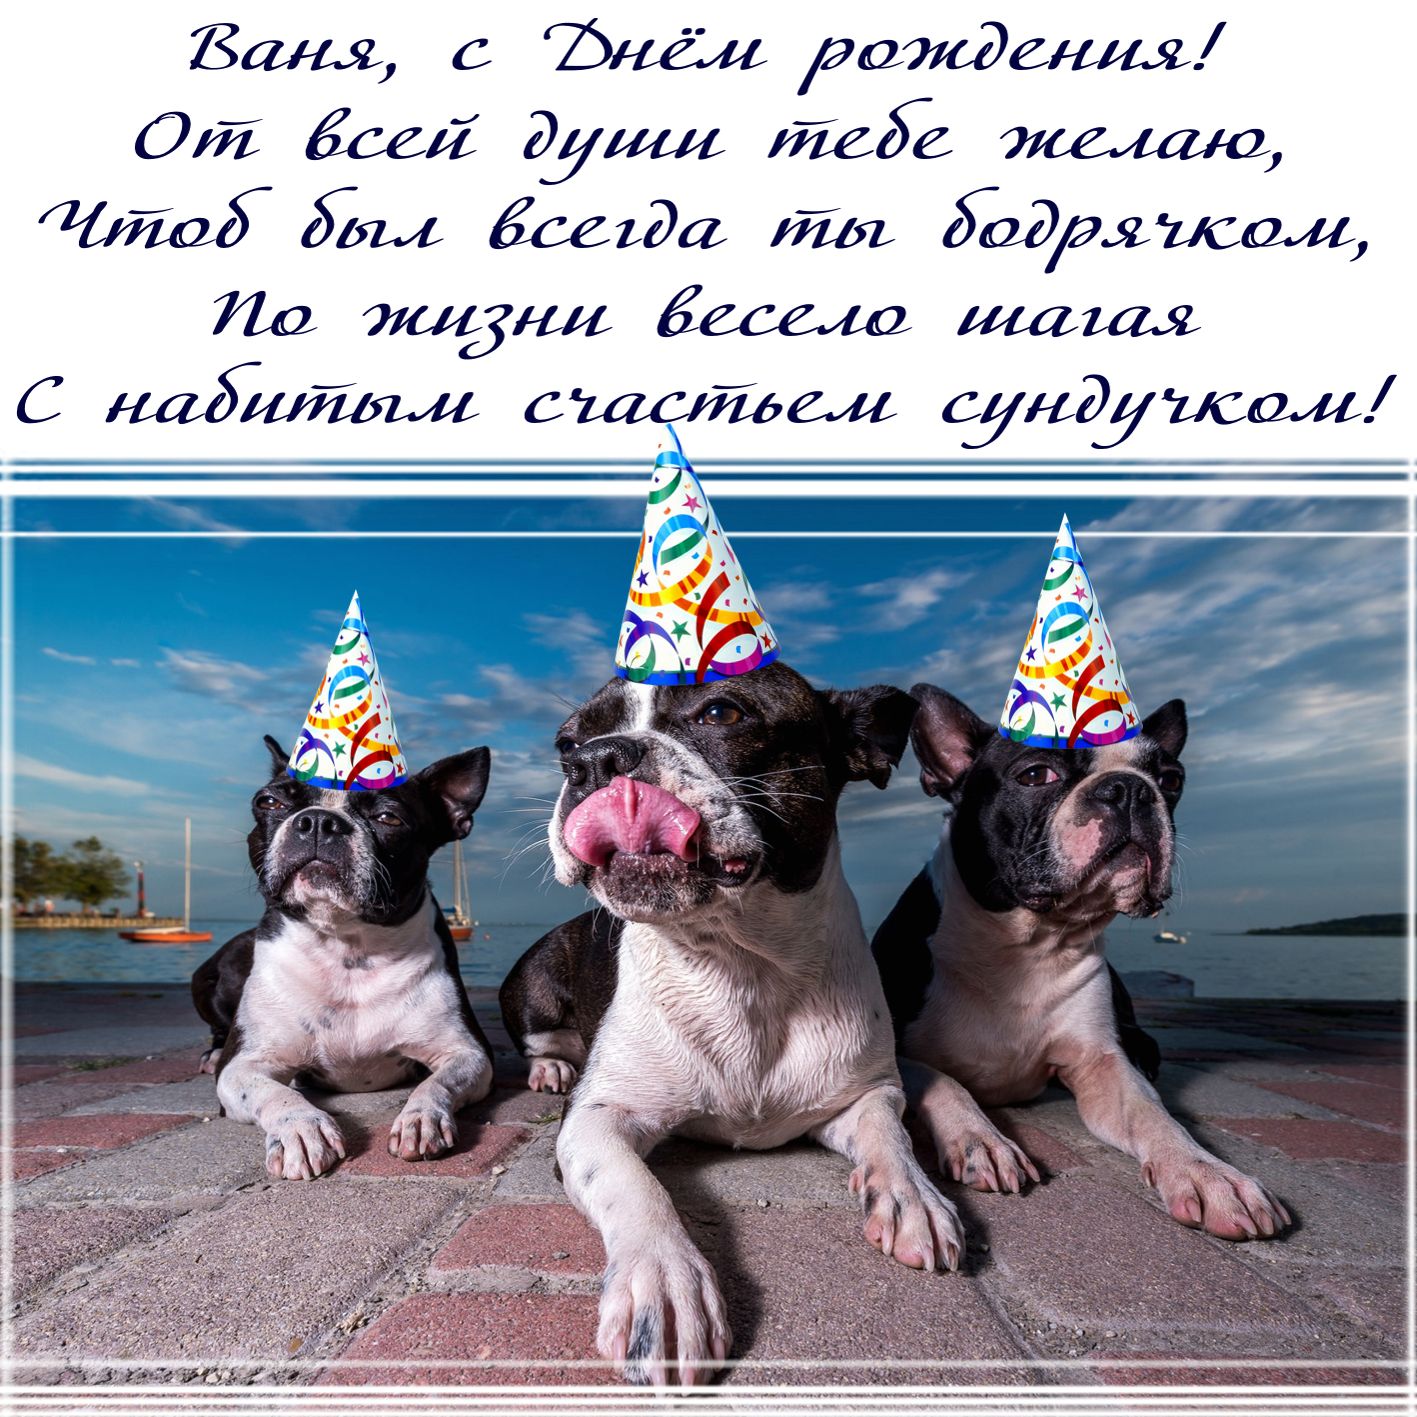 Открытка Ване - забавные собачки в колпачках поздравляют с Днём рождения